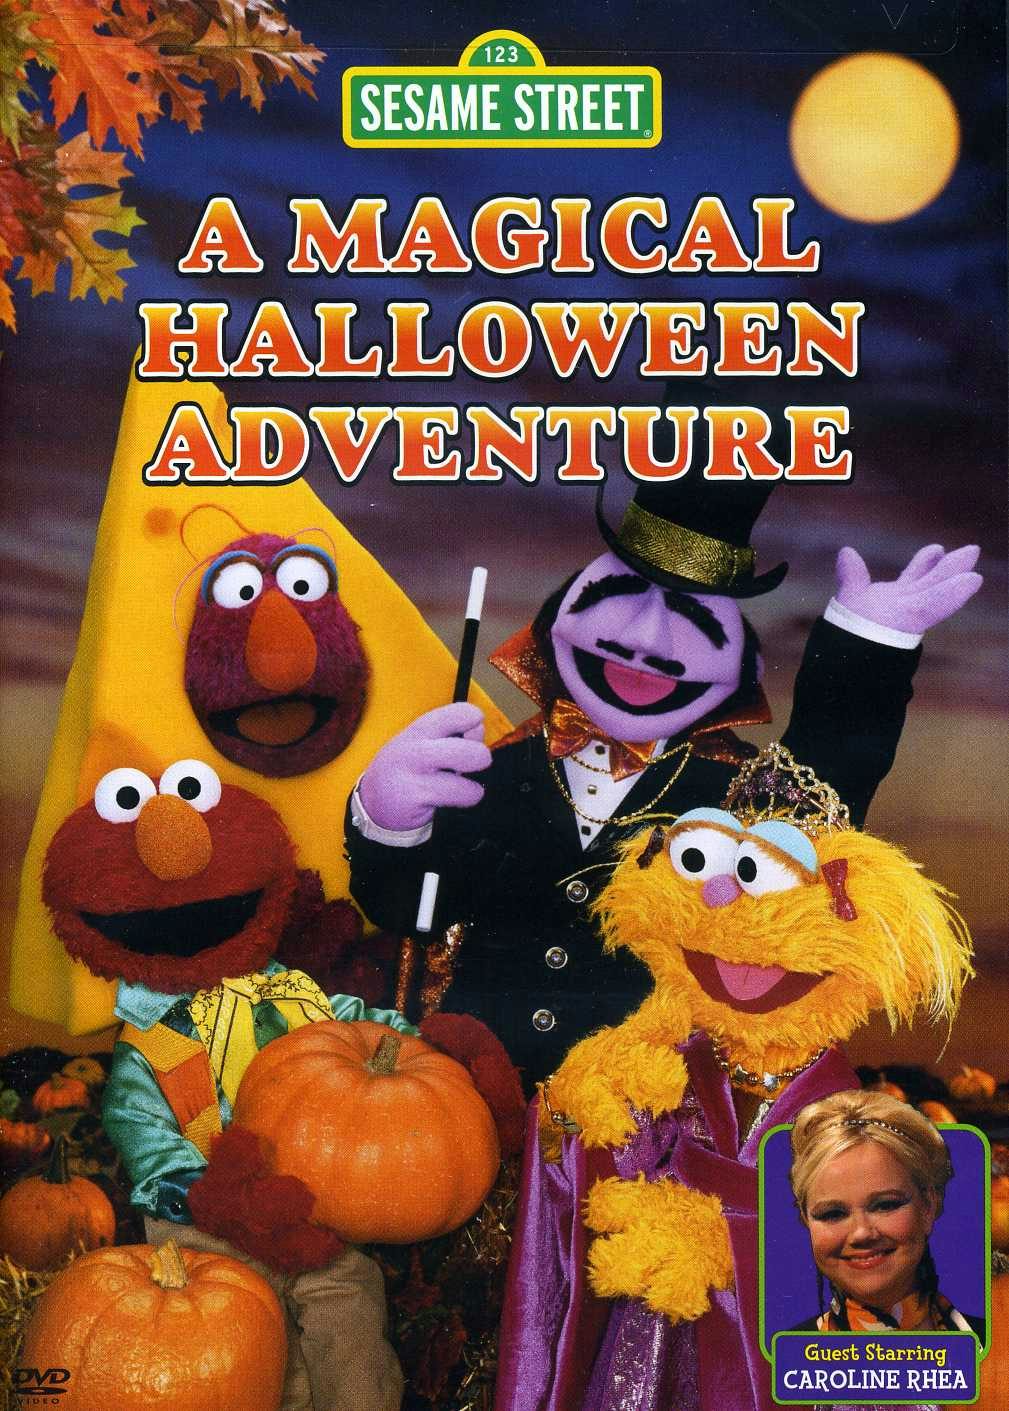 Sesame Street MAGICAL HALLOWEEN ADVENTURE DVD